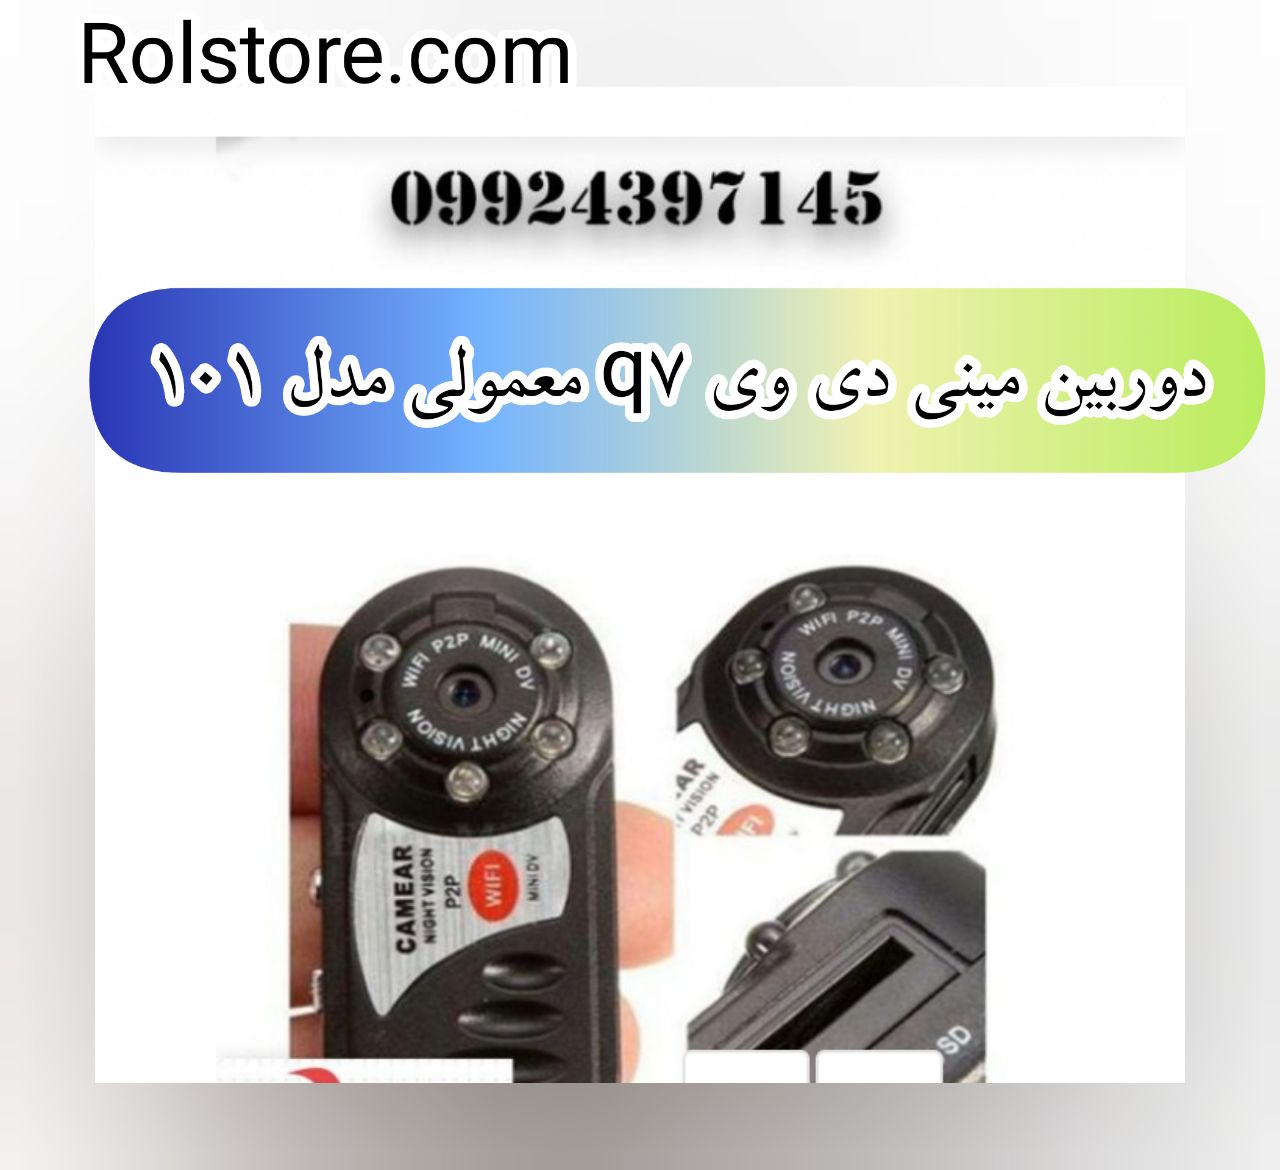 دوربین مینی دی وی q7 معمولی/۰۹۹۲۴۳۹۷۱۴۵/دوربین کوچک ارزان قیمت